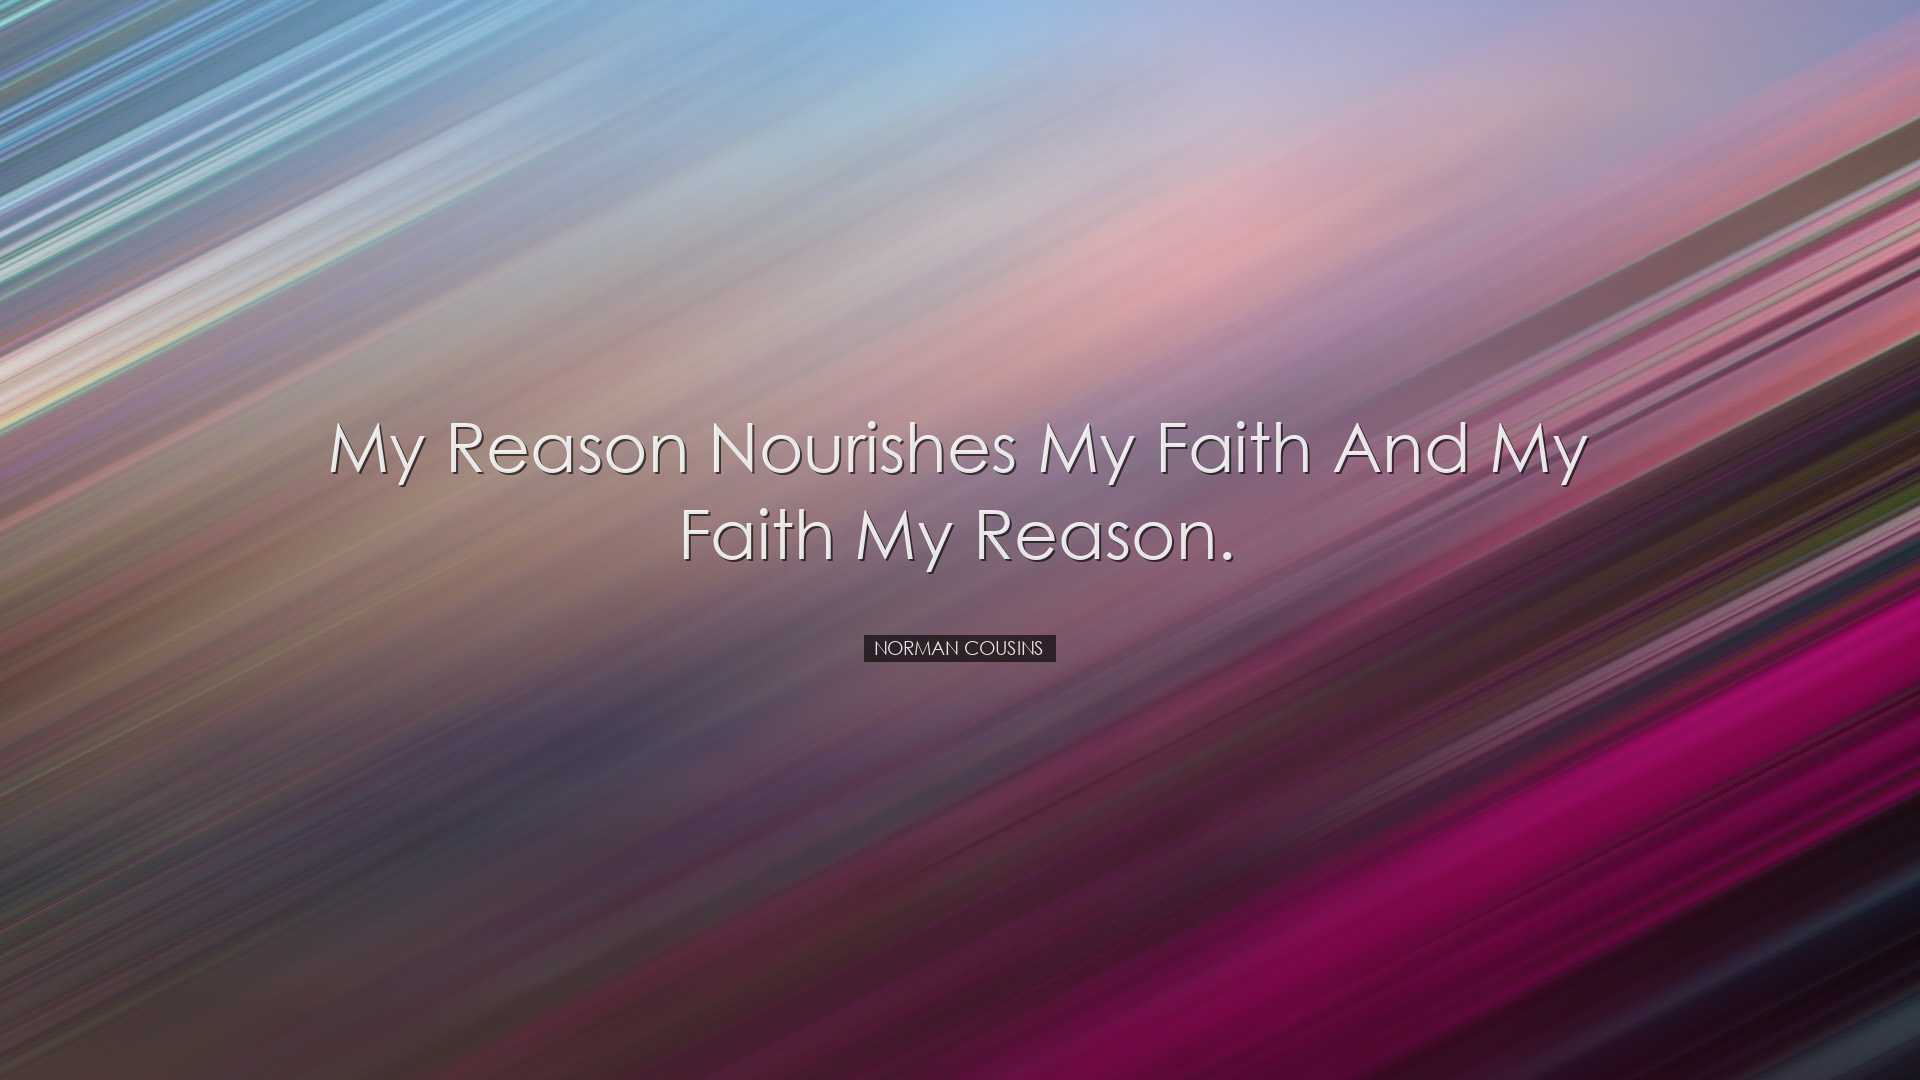 My reason nourishes my faith and my faith my reason. - Norman Cous